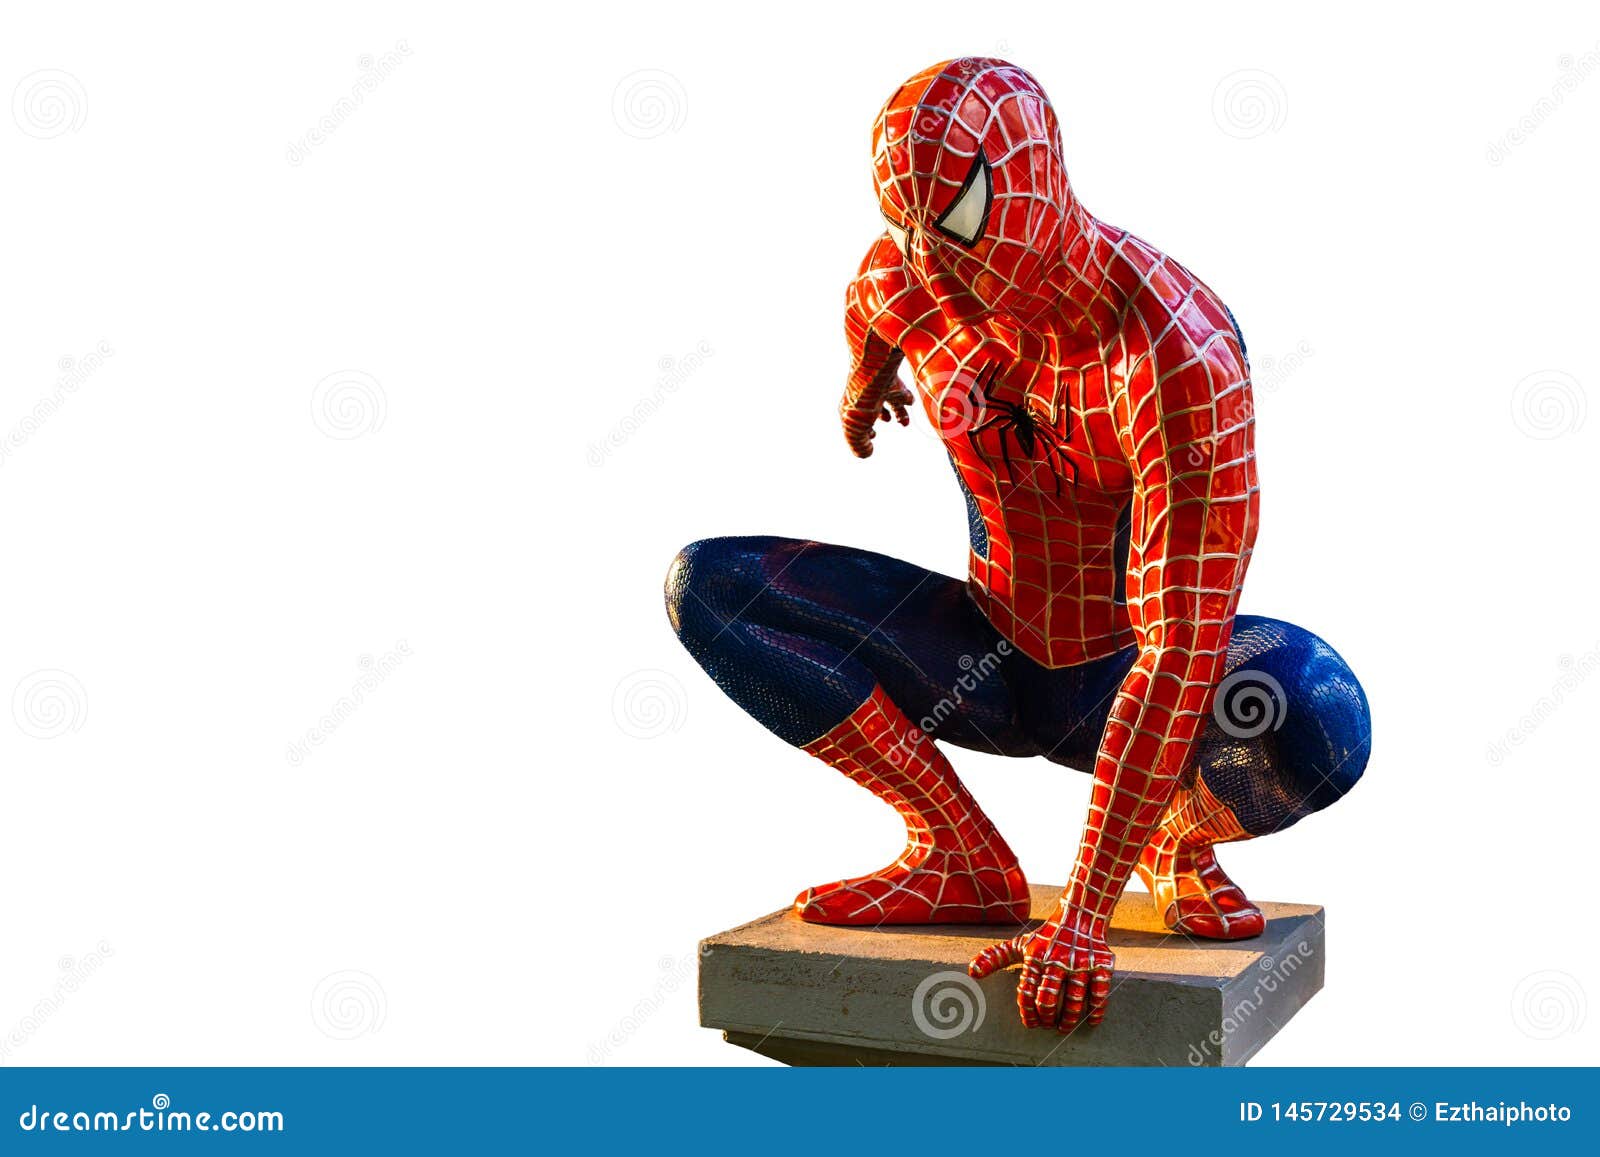 Mô hình Spider-Man cô đơn trên nền trắng: Bạn là fan của Spider Man? Hãy tận hưởng khoảnh khắc thư giãn bên chiếc mô hình Spider-Man cô đơn, độc đáo và tiện dụng trên nền trắng. Khám phá và khơi nguồn cảm hứng cho sự sáng tạo của bạn với chiếc mô hình này.